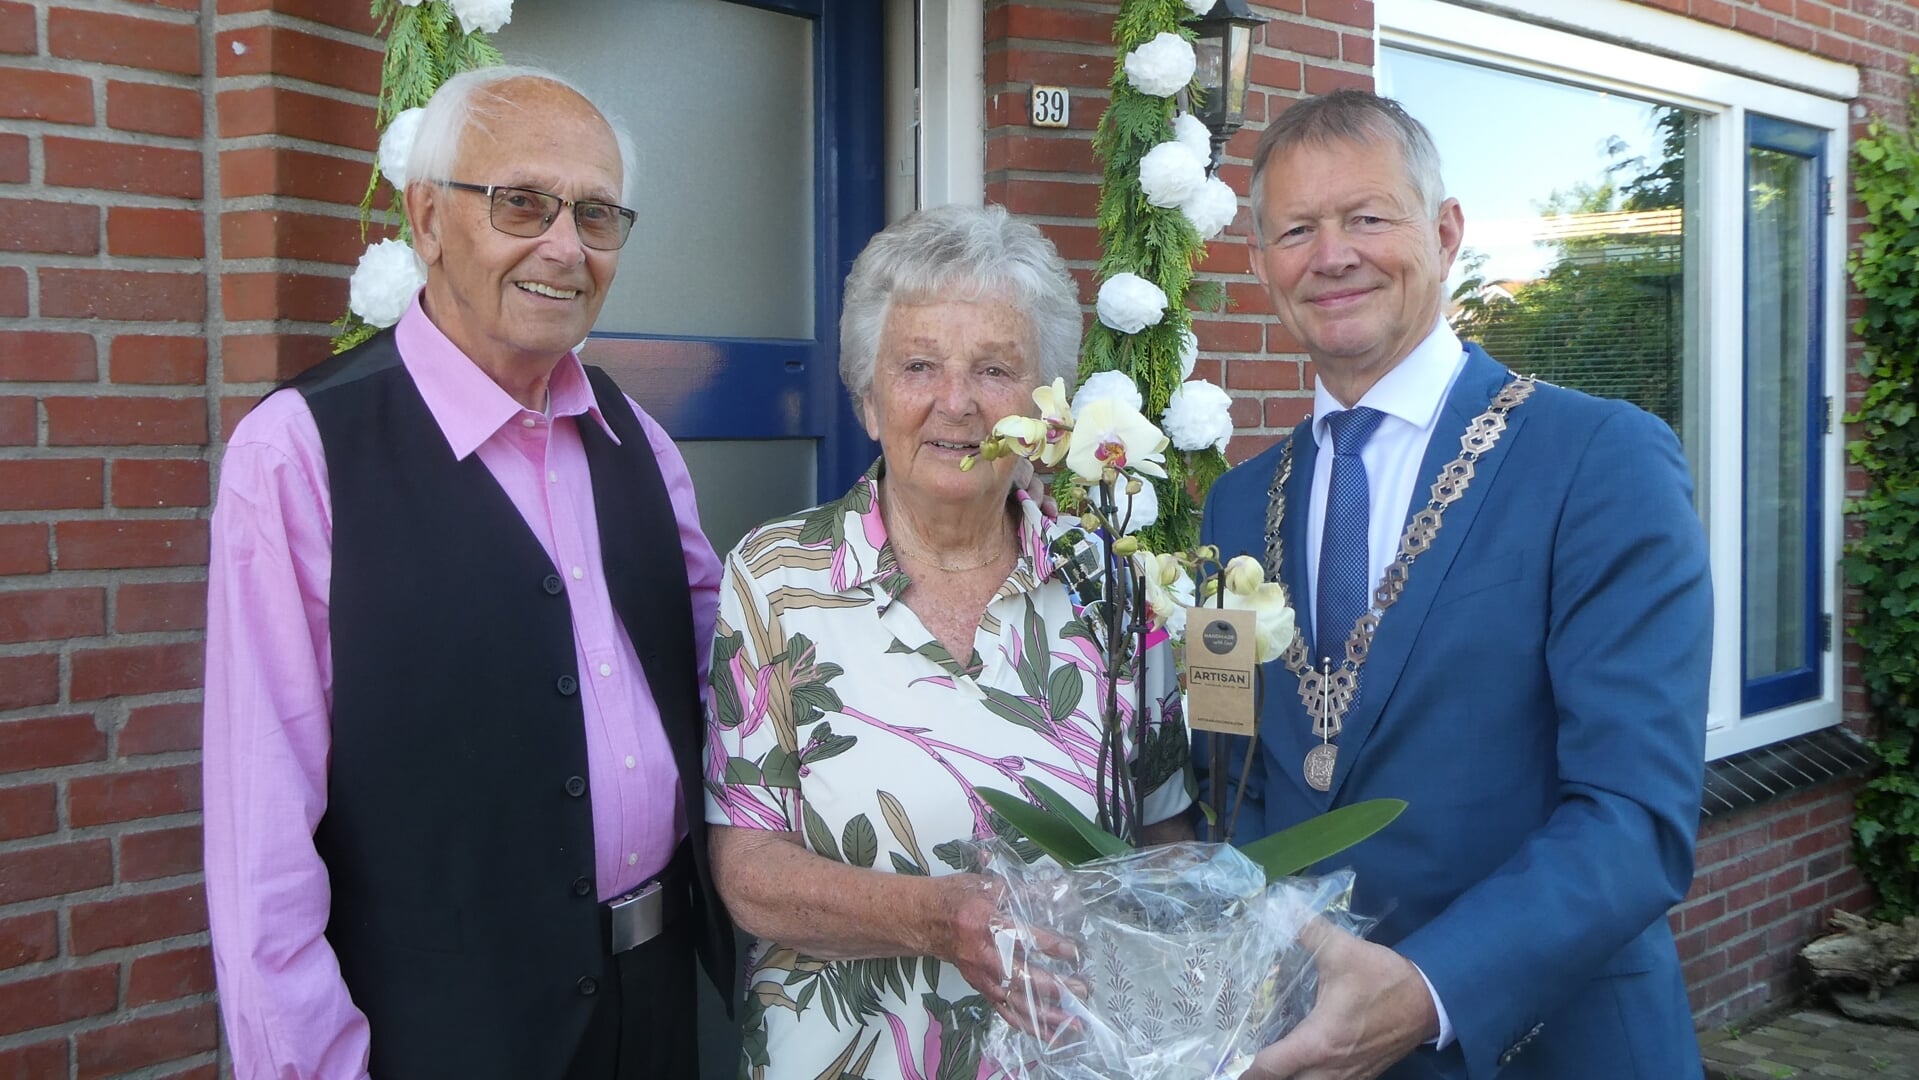 Namens de gemeente Bronckhorst kwam locoburgemeester Antoon Peppelman Koos en Cisca van Houte feliciteren. Foto: Jan Hendriksen